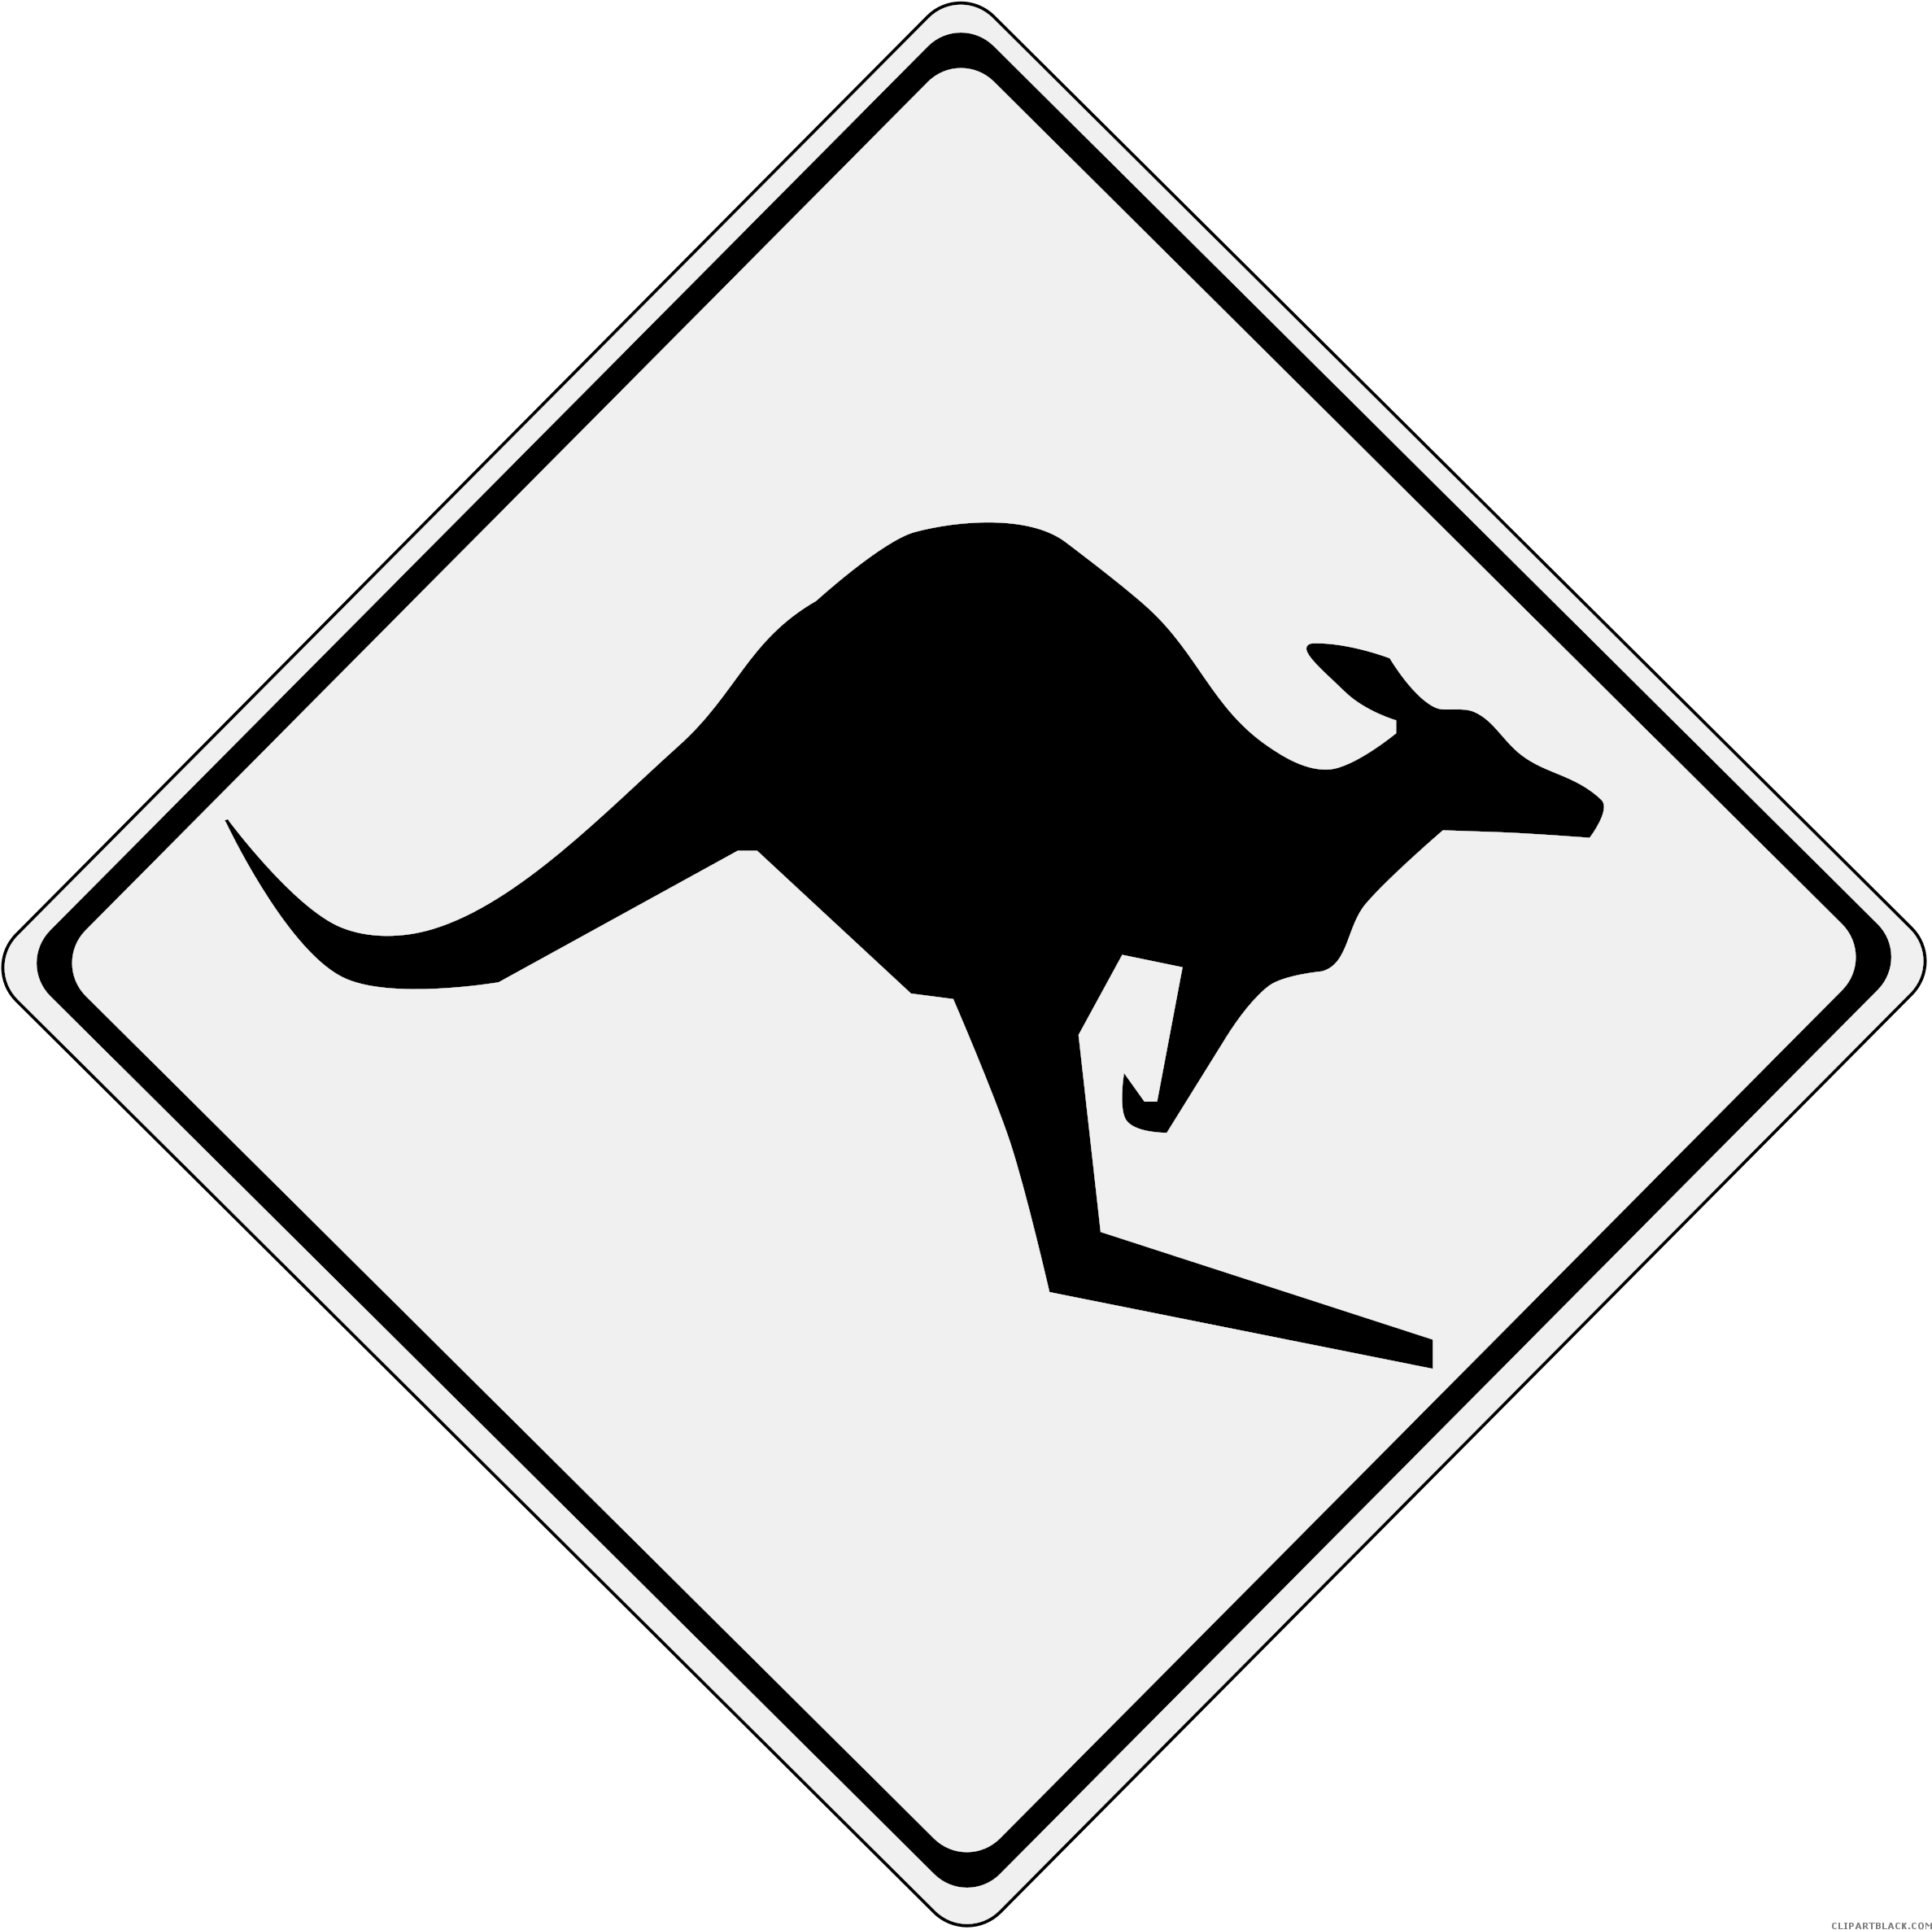 Kangaroo Road Sign Animal Free Black White Clipart - Kangaroo Sign (2400x2400)